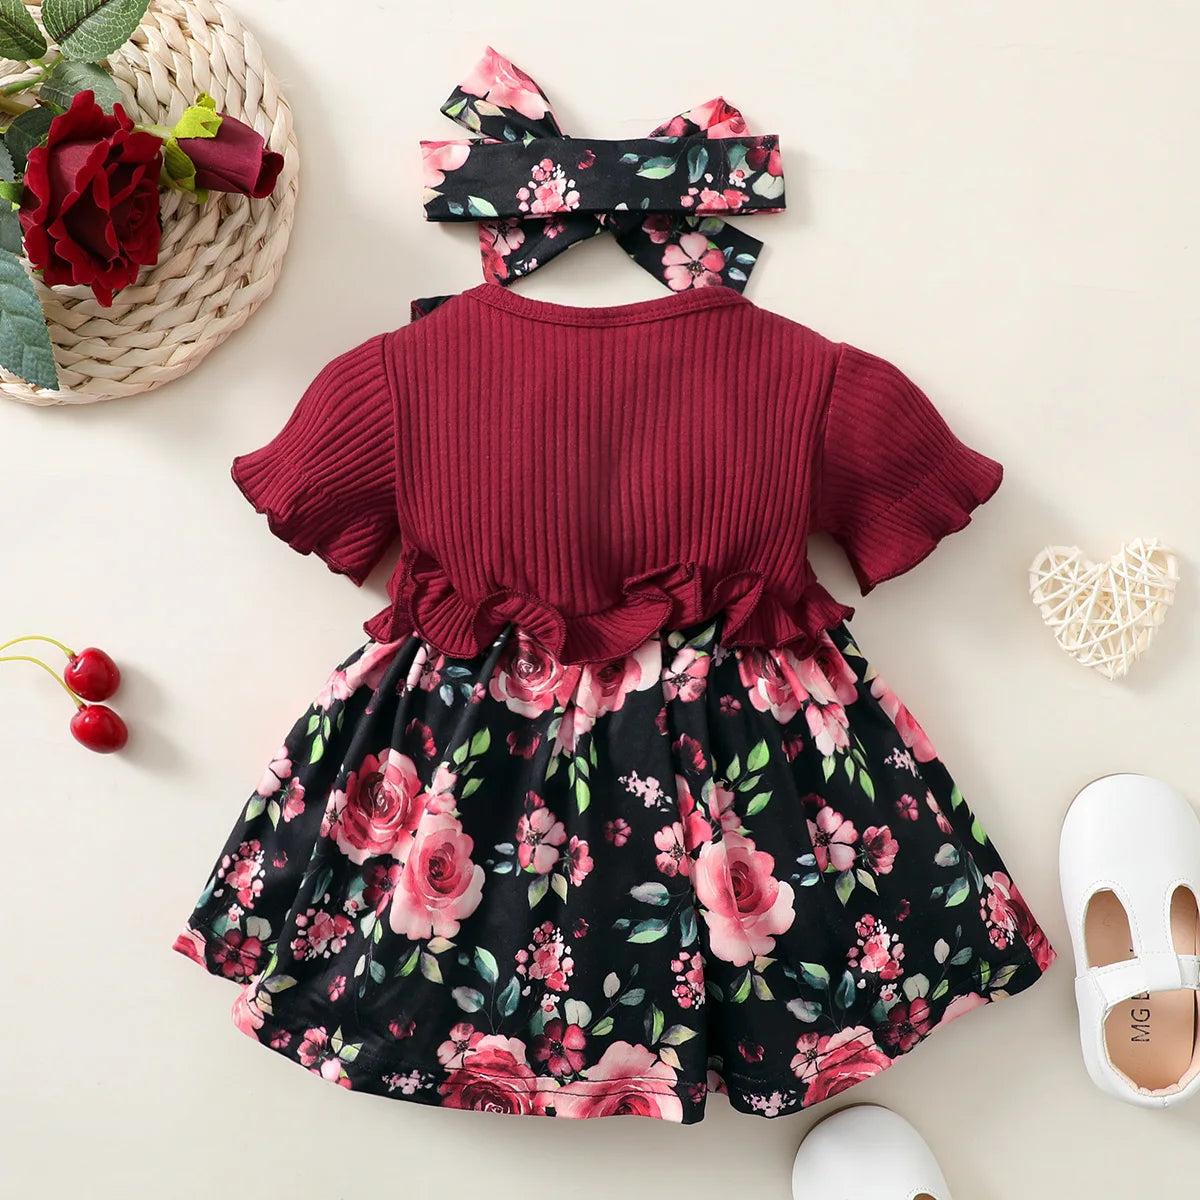 Baby girl red flowers printed cute dress